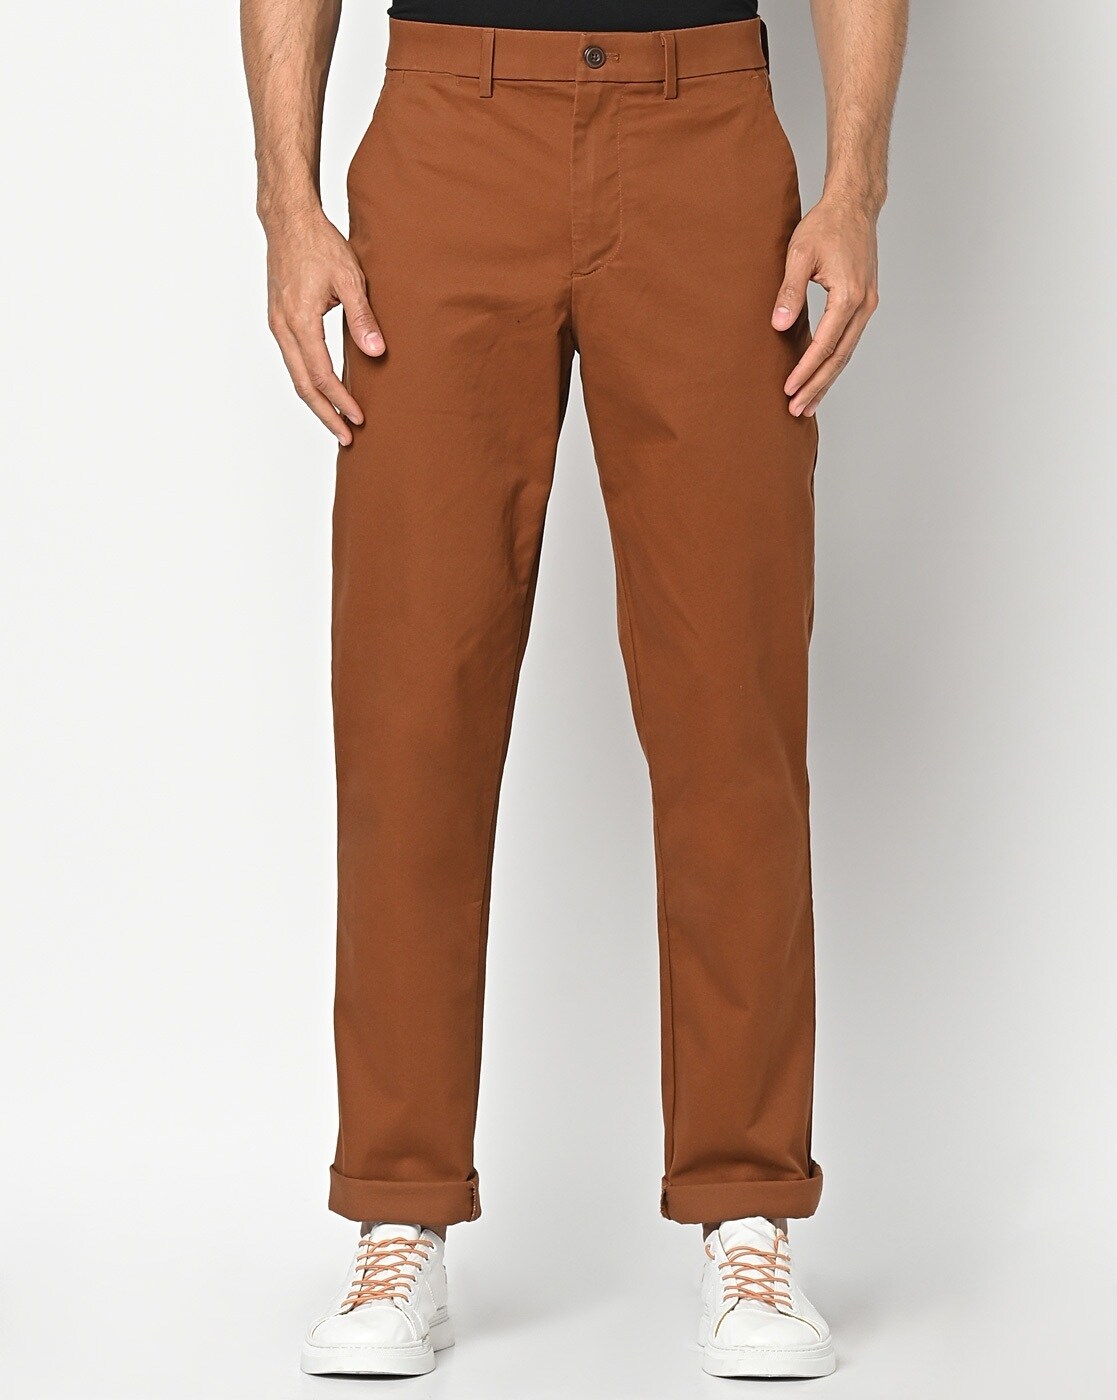 Buy  work pants brown  Very cheap 